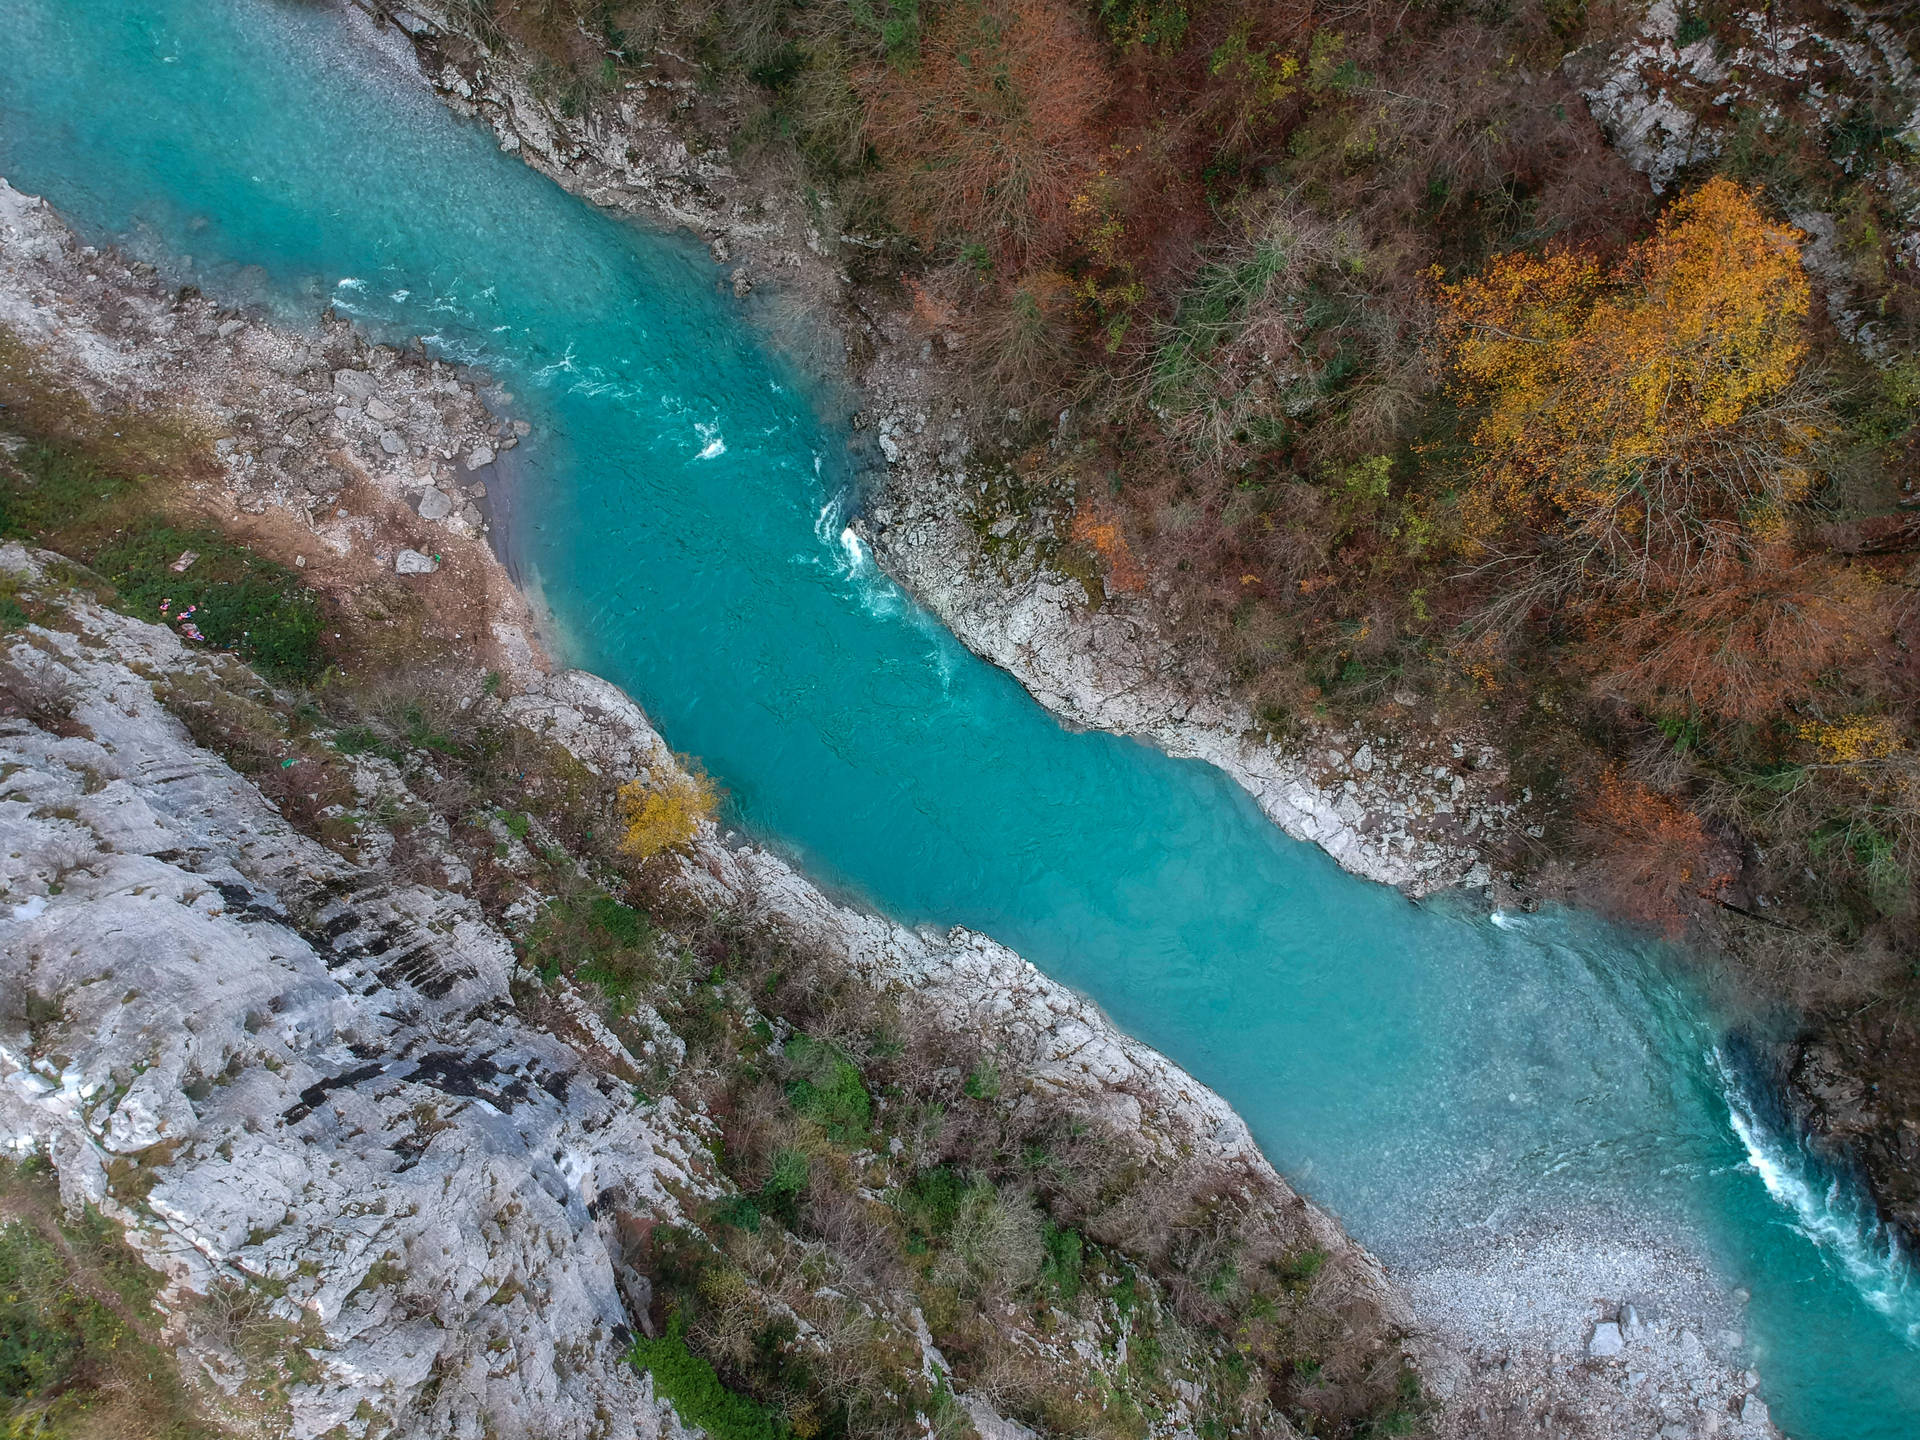 Montenegro Tara River Canyon